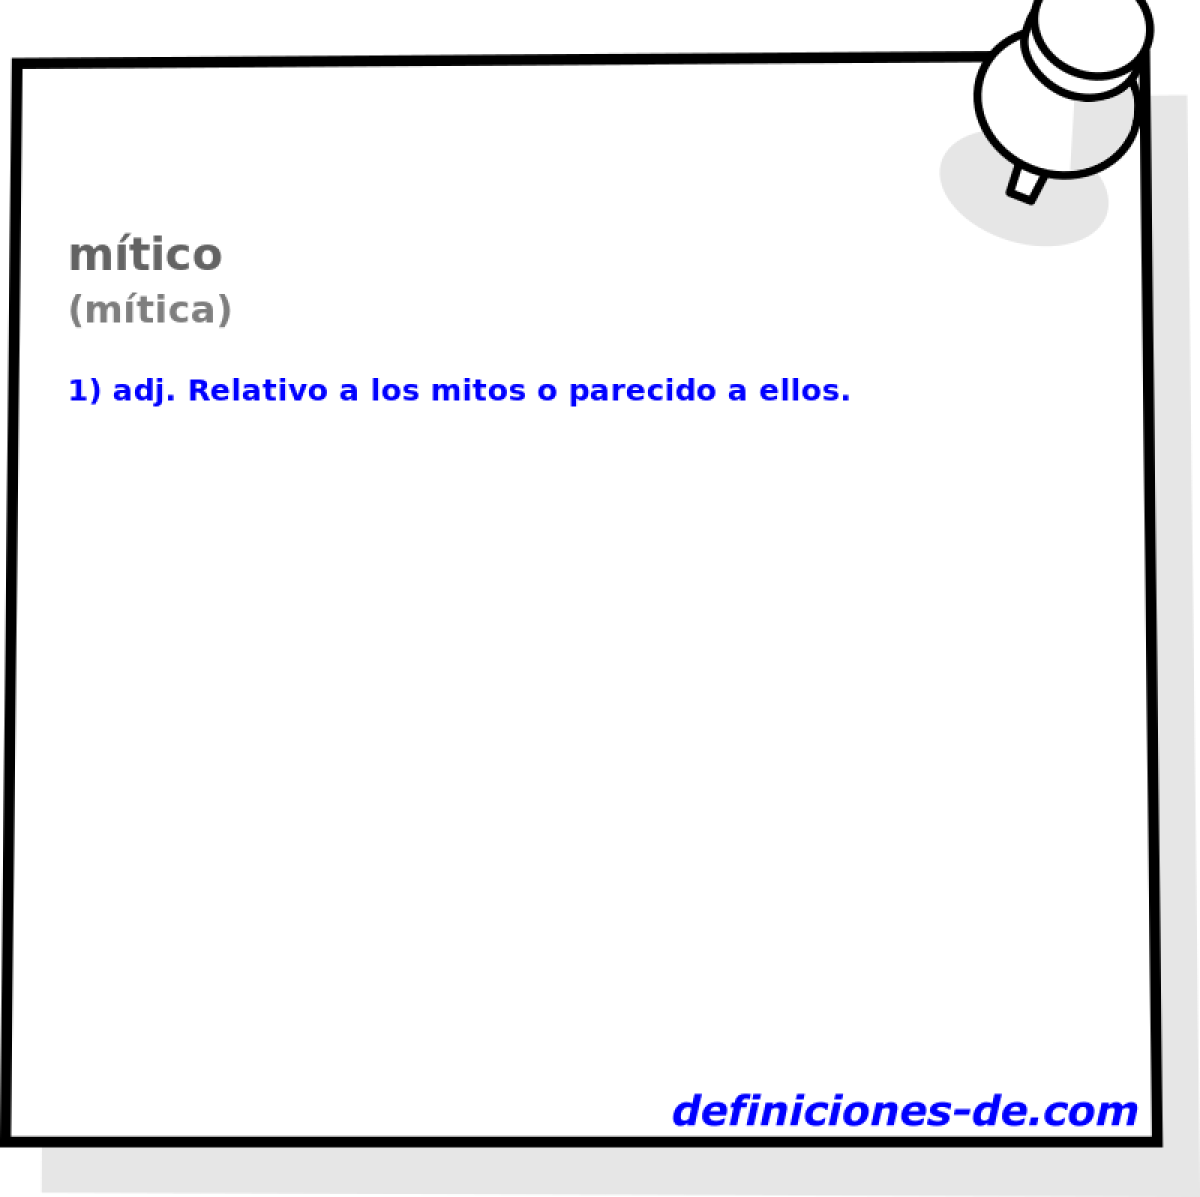 mtico (mtica)